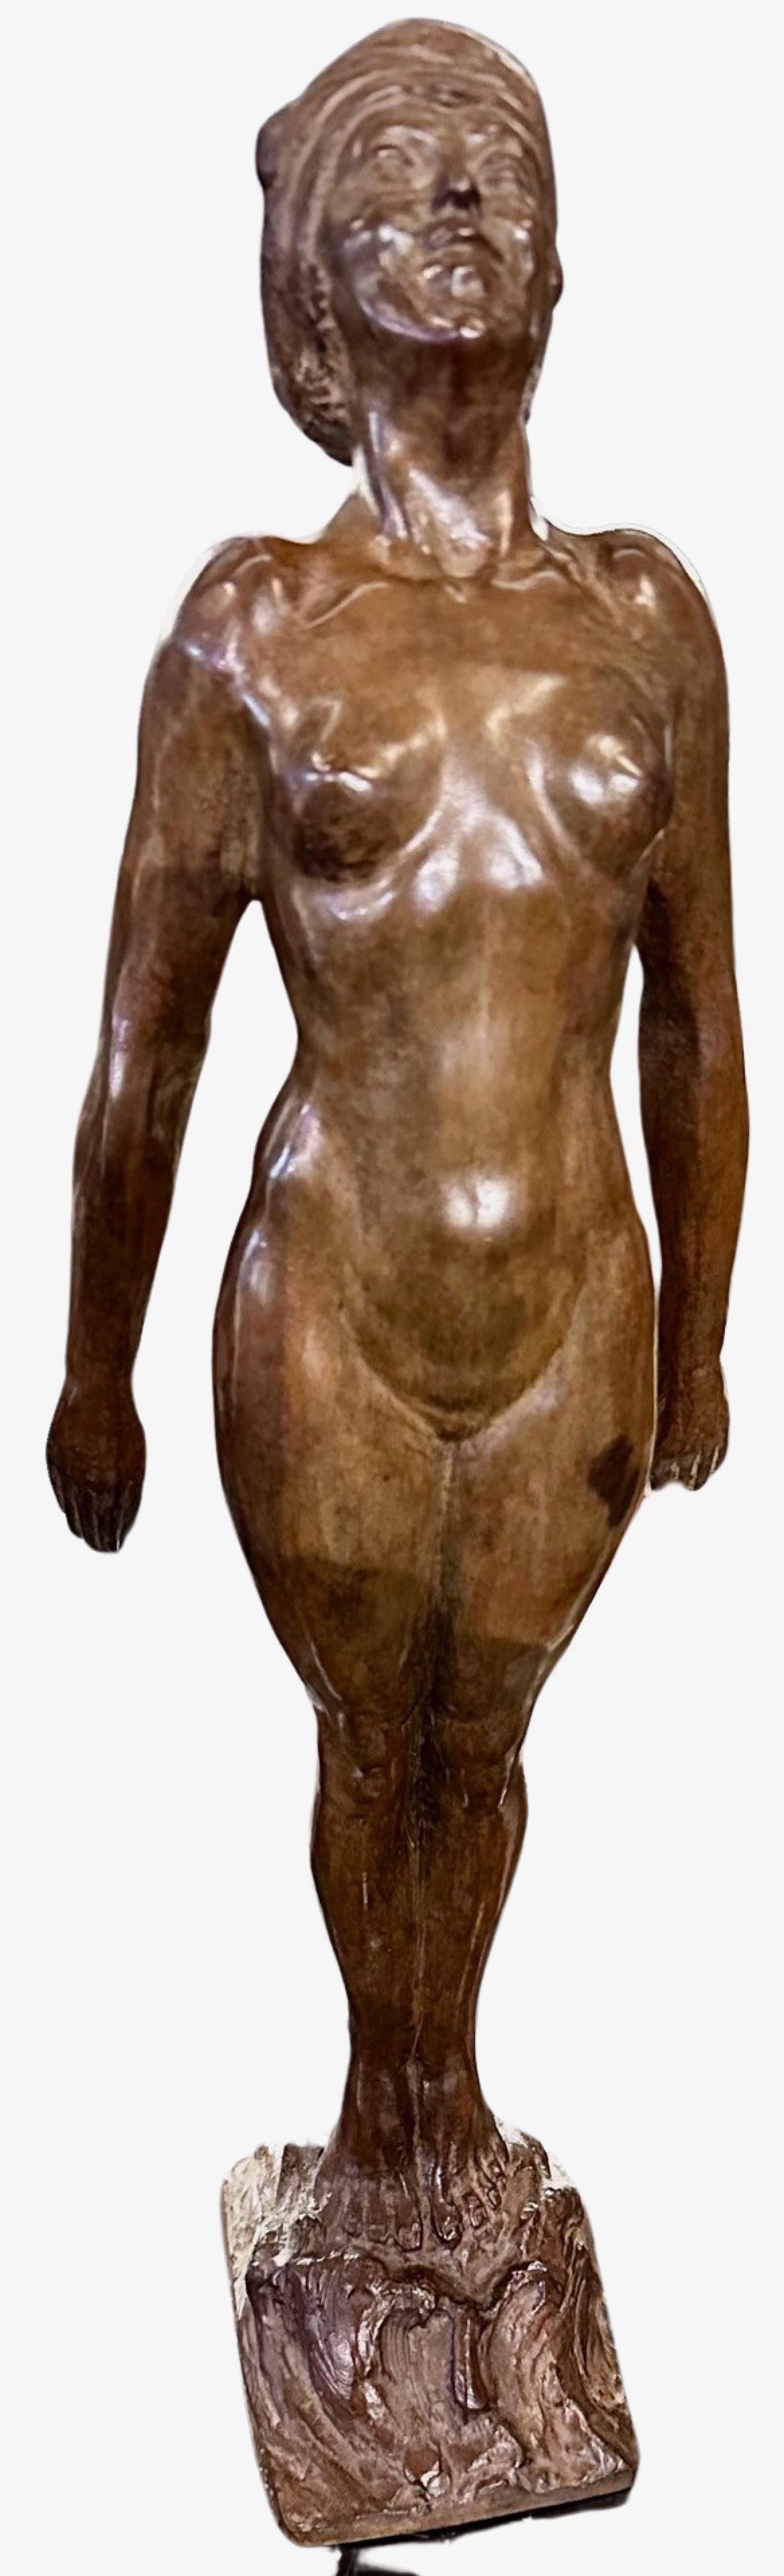 La statue de femme nue se baignant, de style Art déco français, réalisée par le sculpteur belge Guillaume Dumont en 1923, témoigne de son génie artistique. Dumont, né en 1889, bien que la date de son décès reste inconnue, a laissé une trace